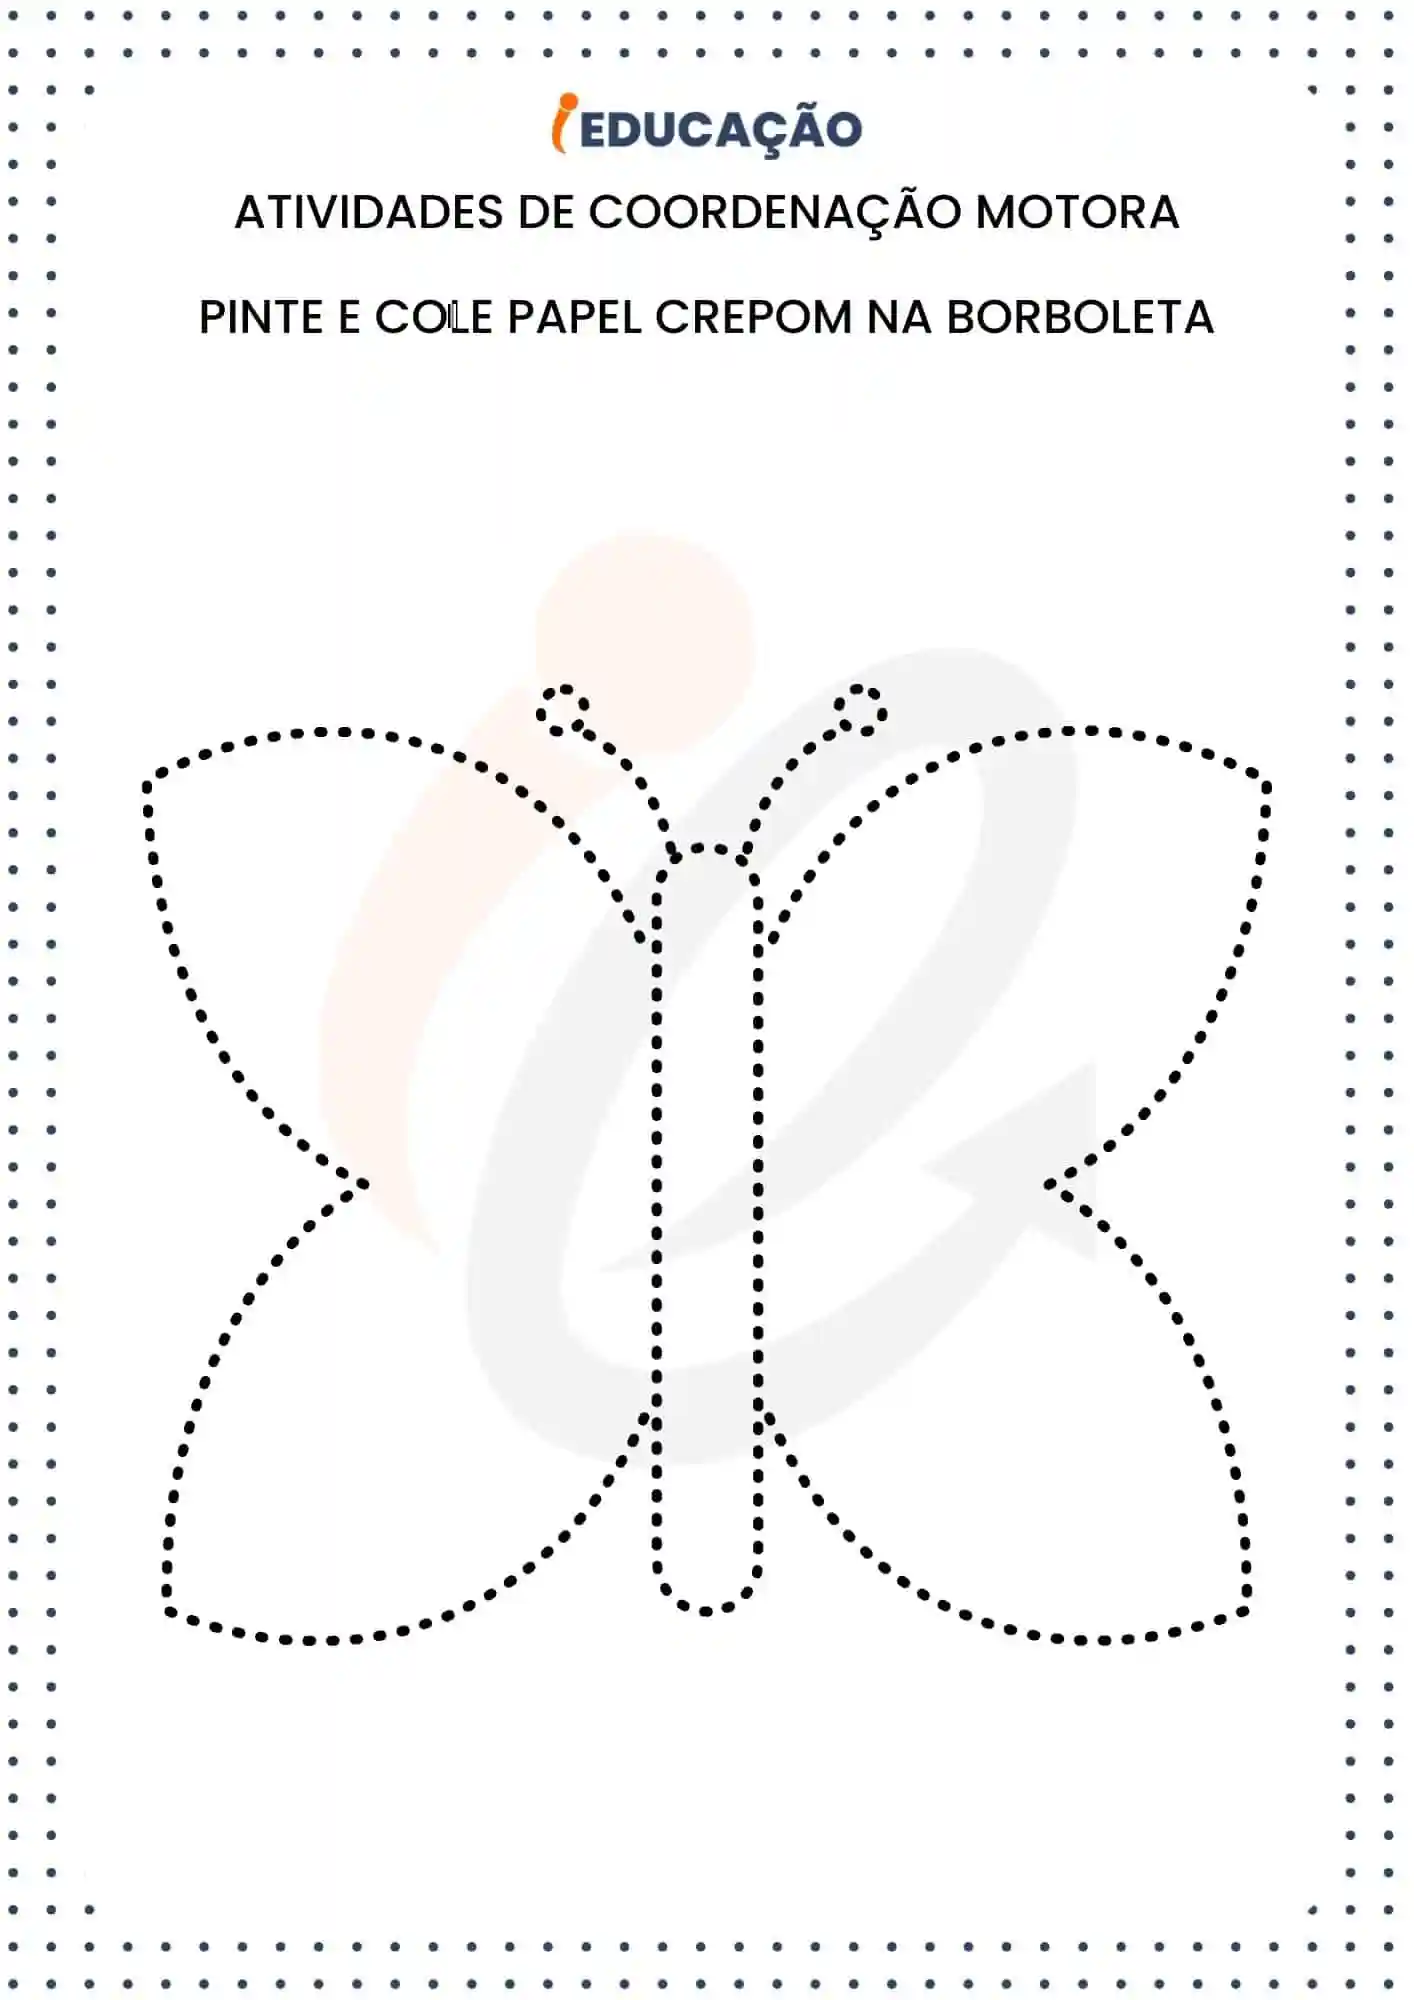 Atividades de coordenação motora_ Pinte e cole papel crepom na borboleta.